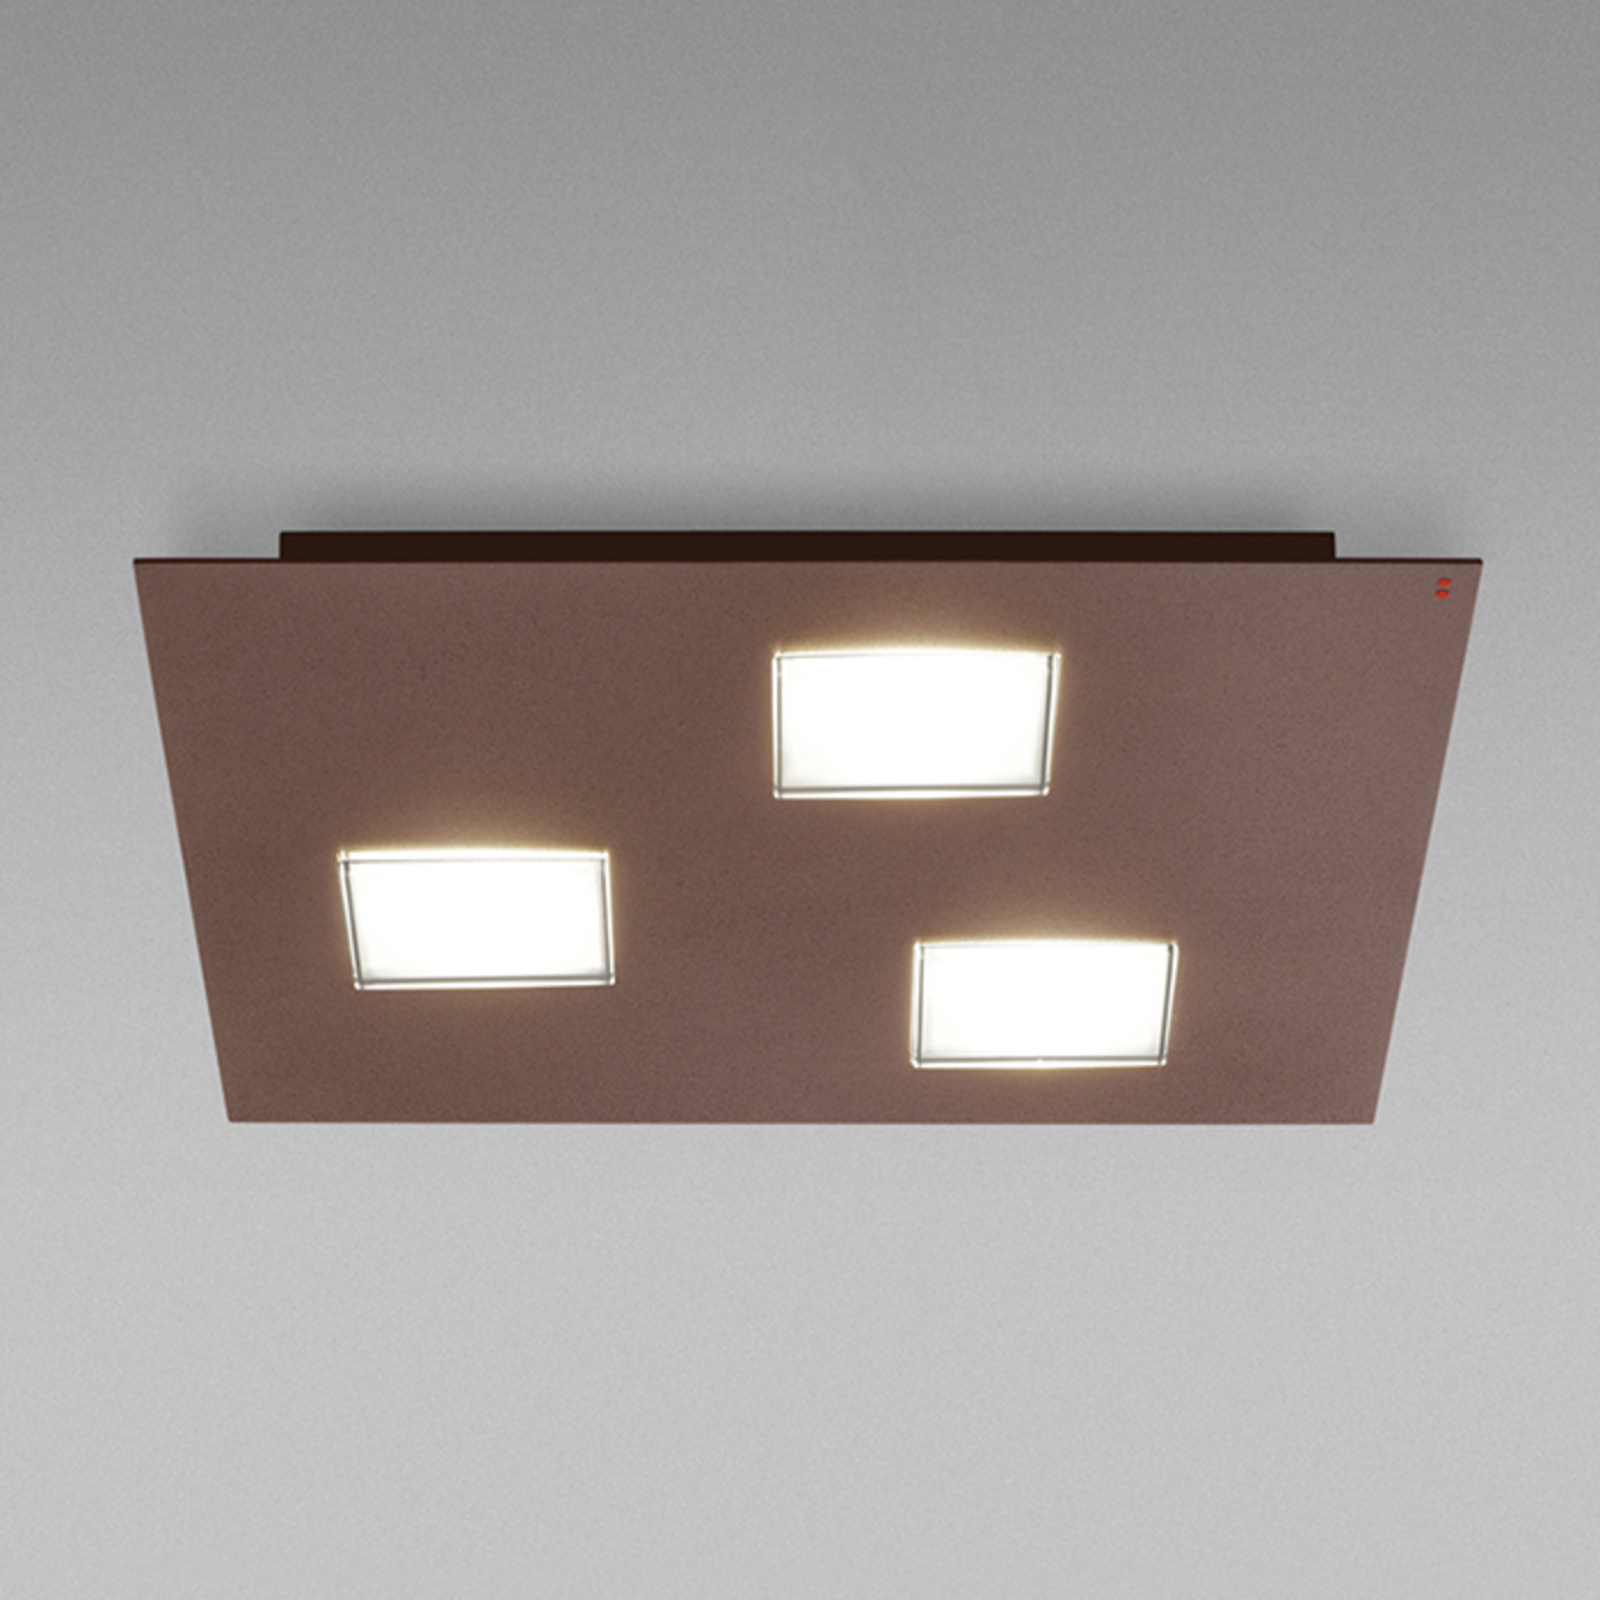 Fabbian Quarter - plafón LED marrón, 3 luces